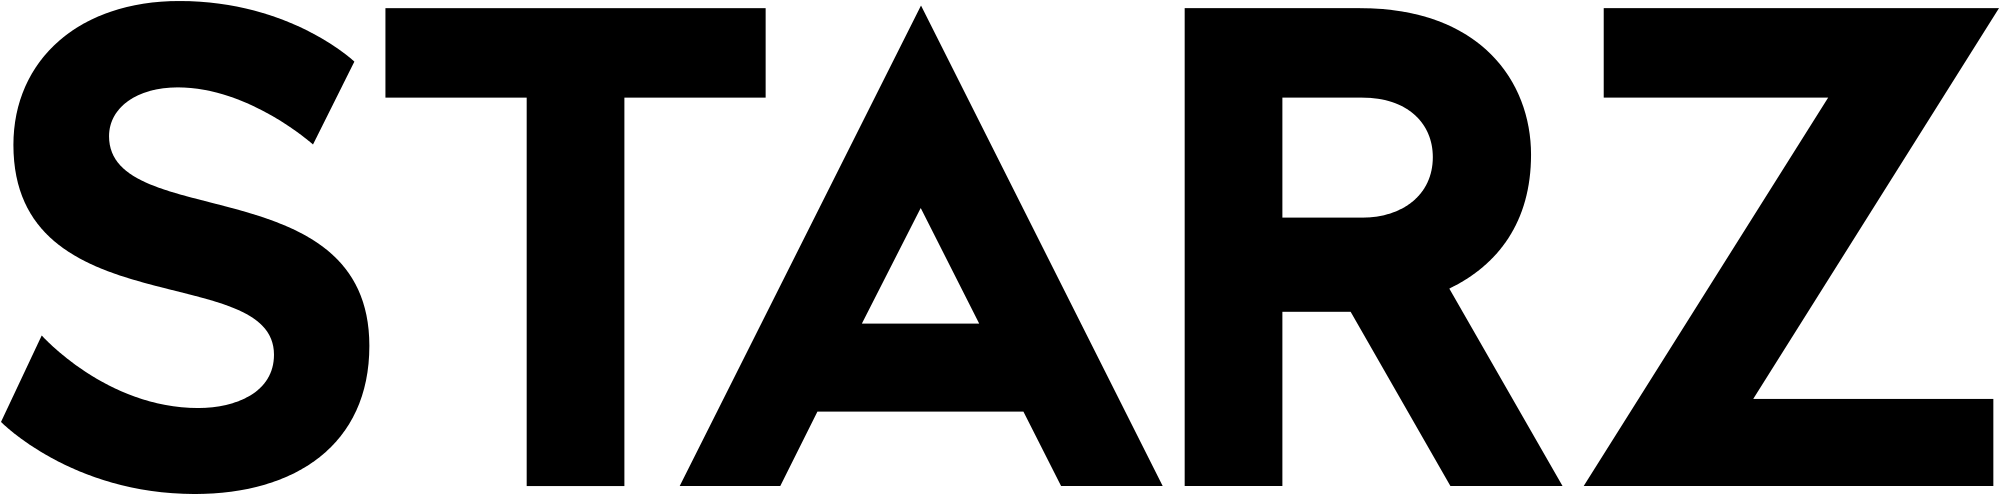 Starz Logo - Starz 2016.svg